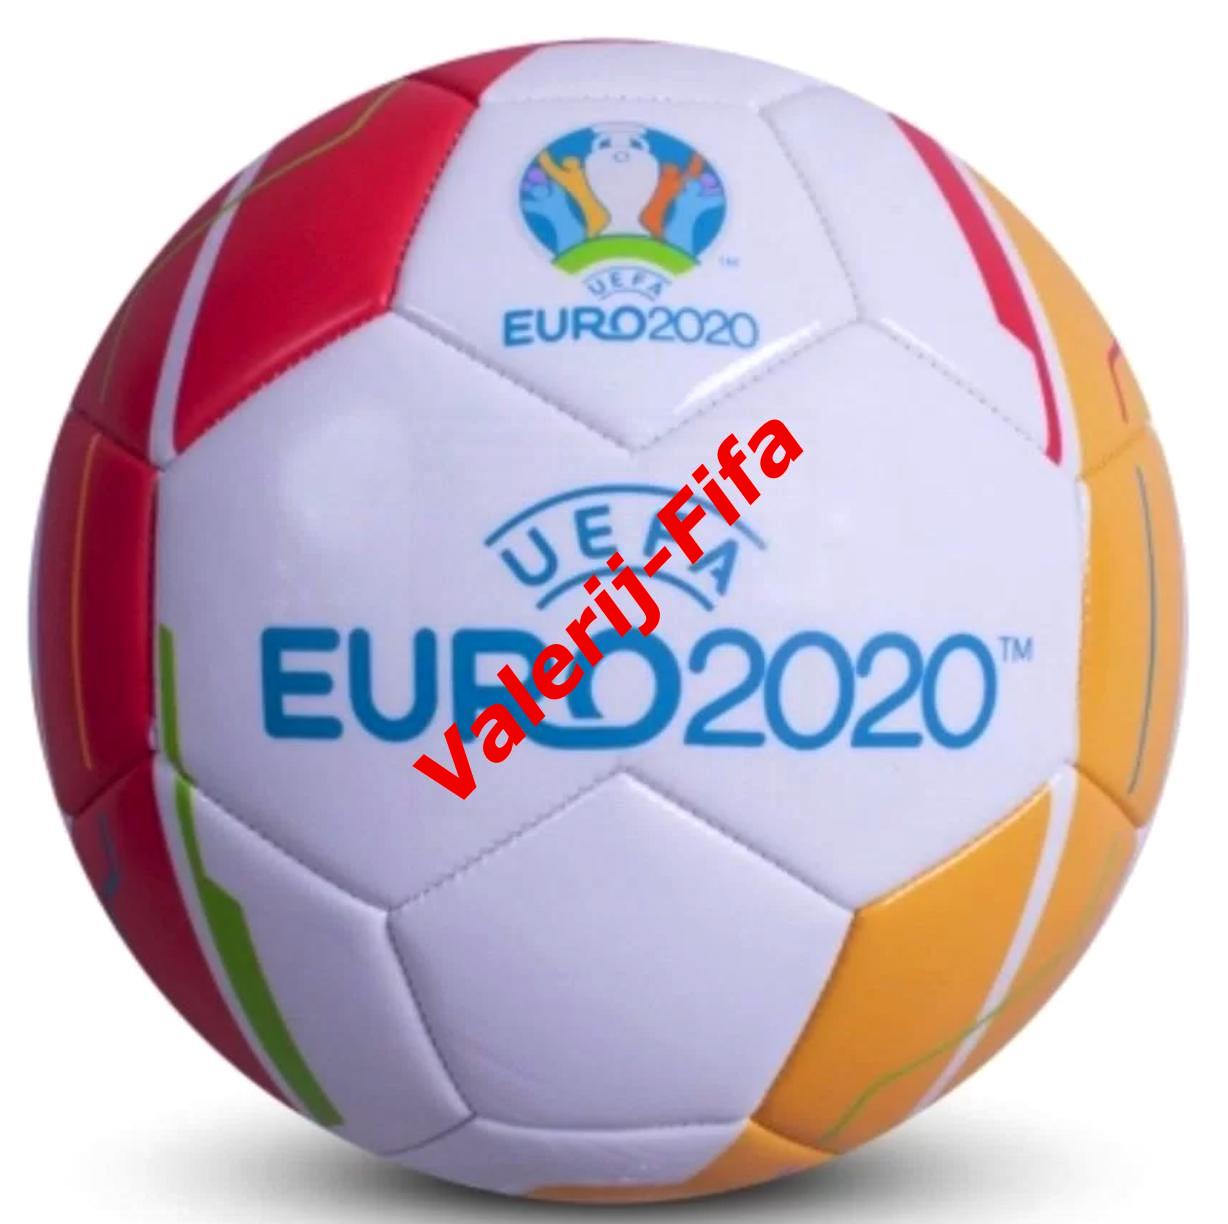 Официальный футбольный мяч Евро 2020. Размер 5